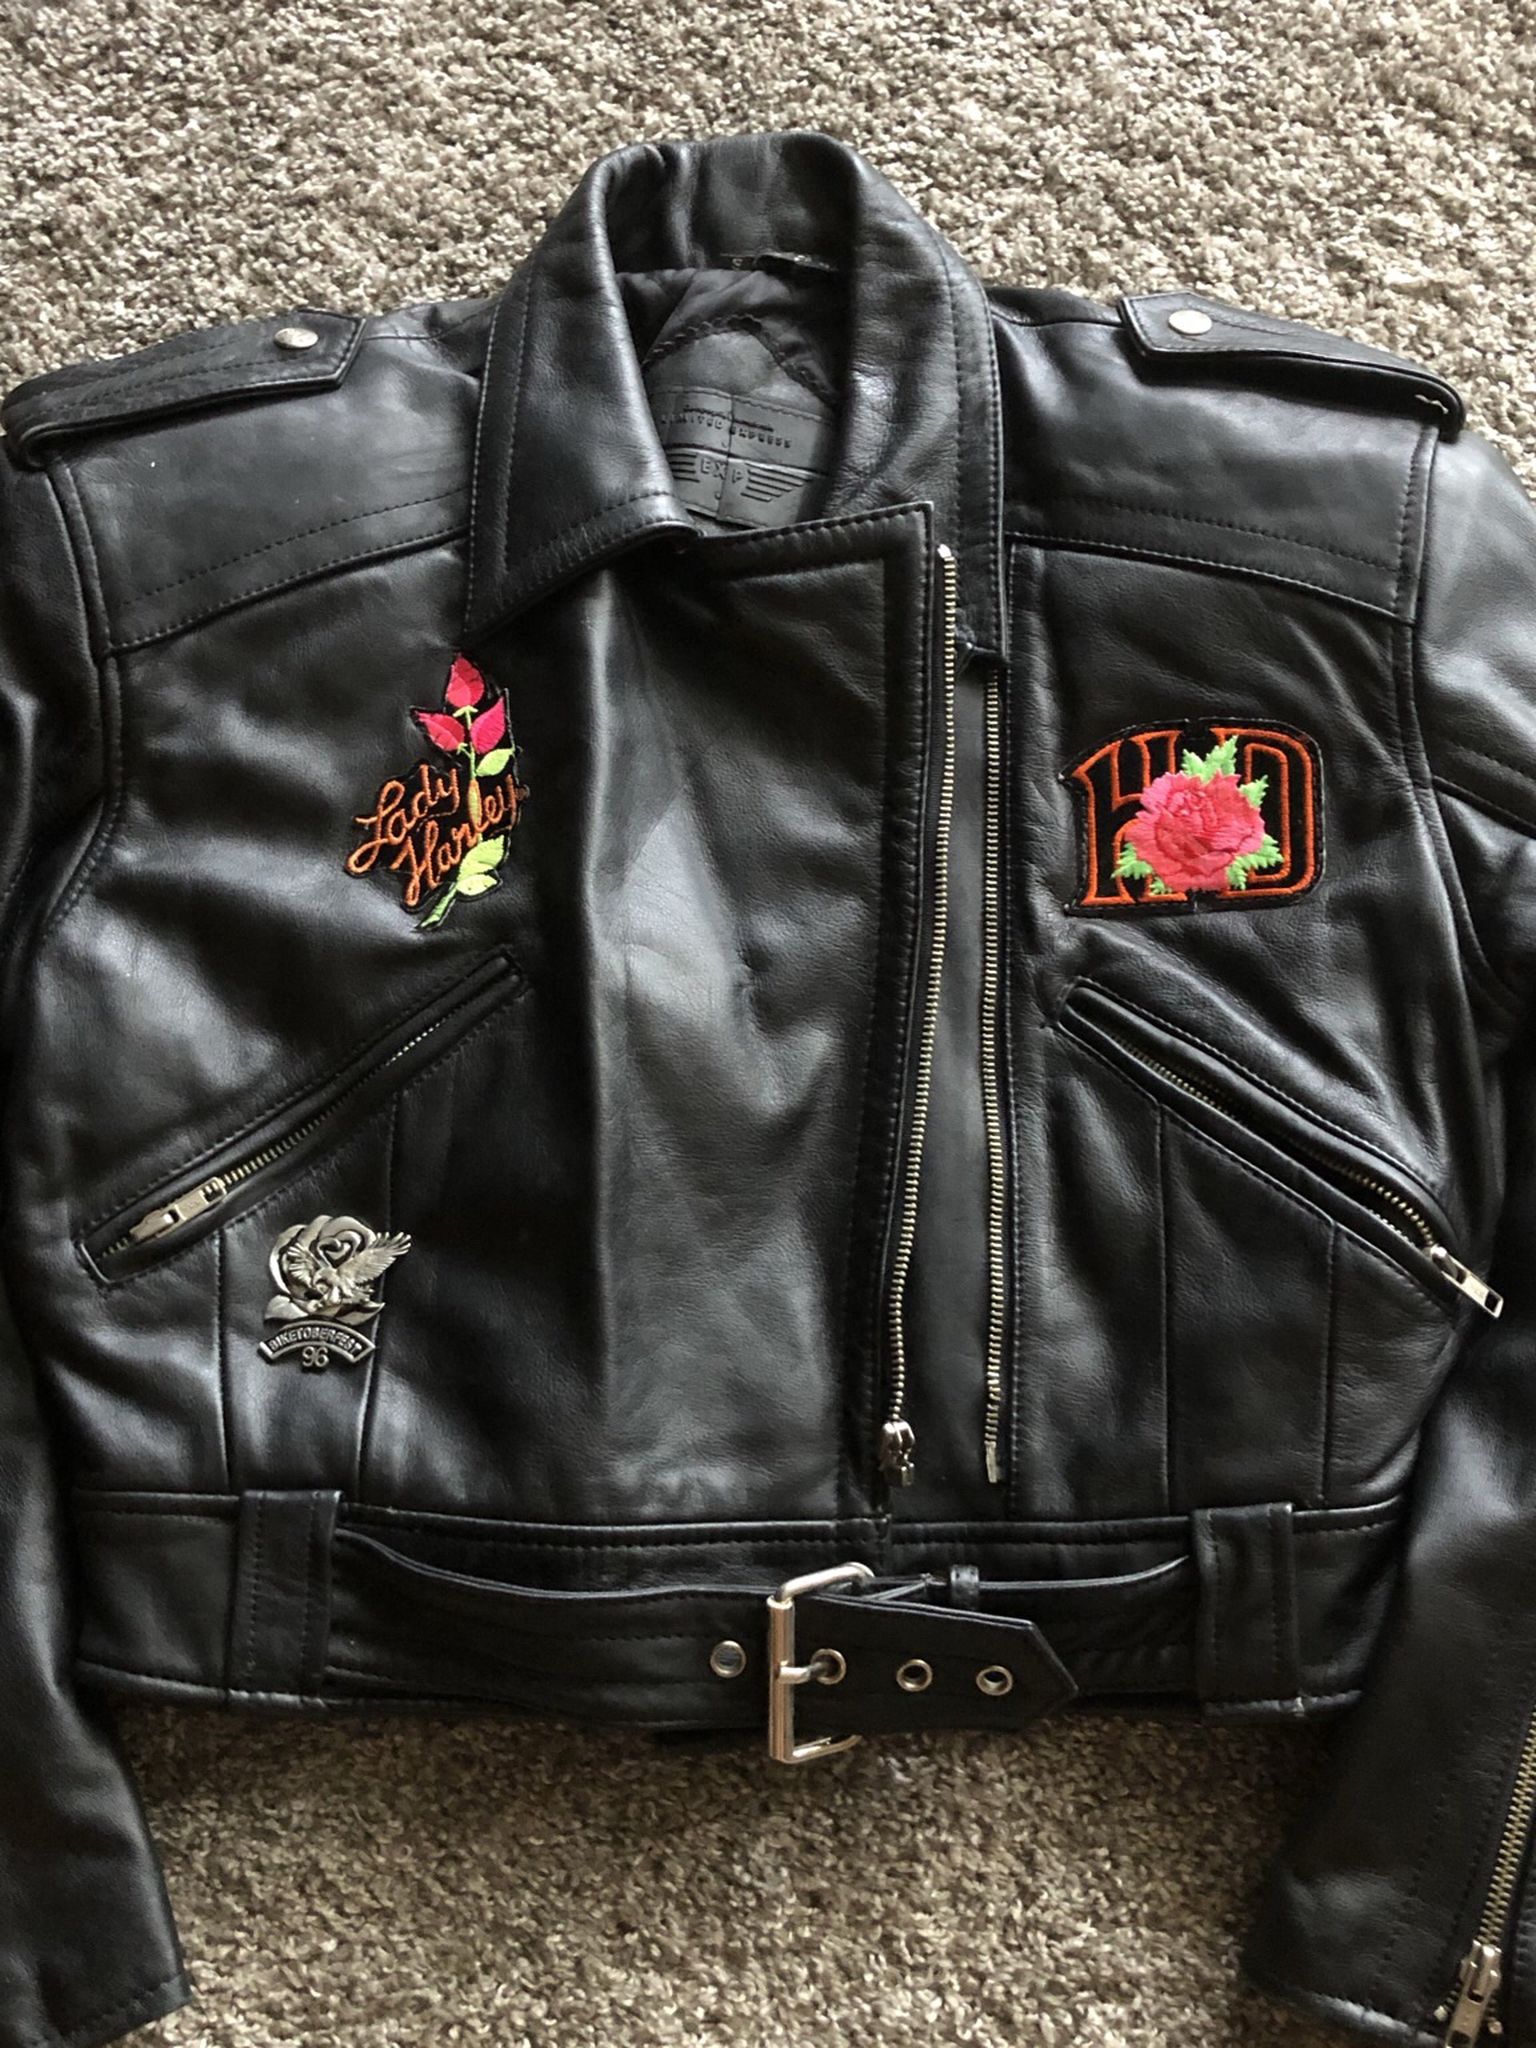 Women’s Harley Leather Gear